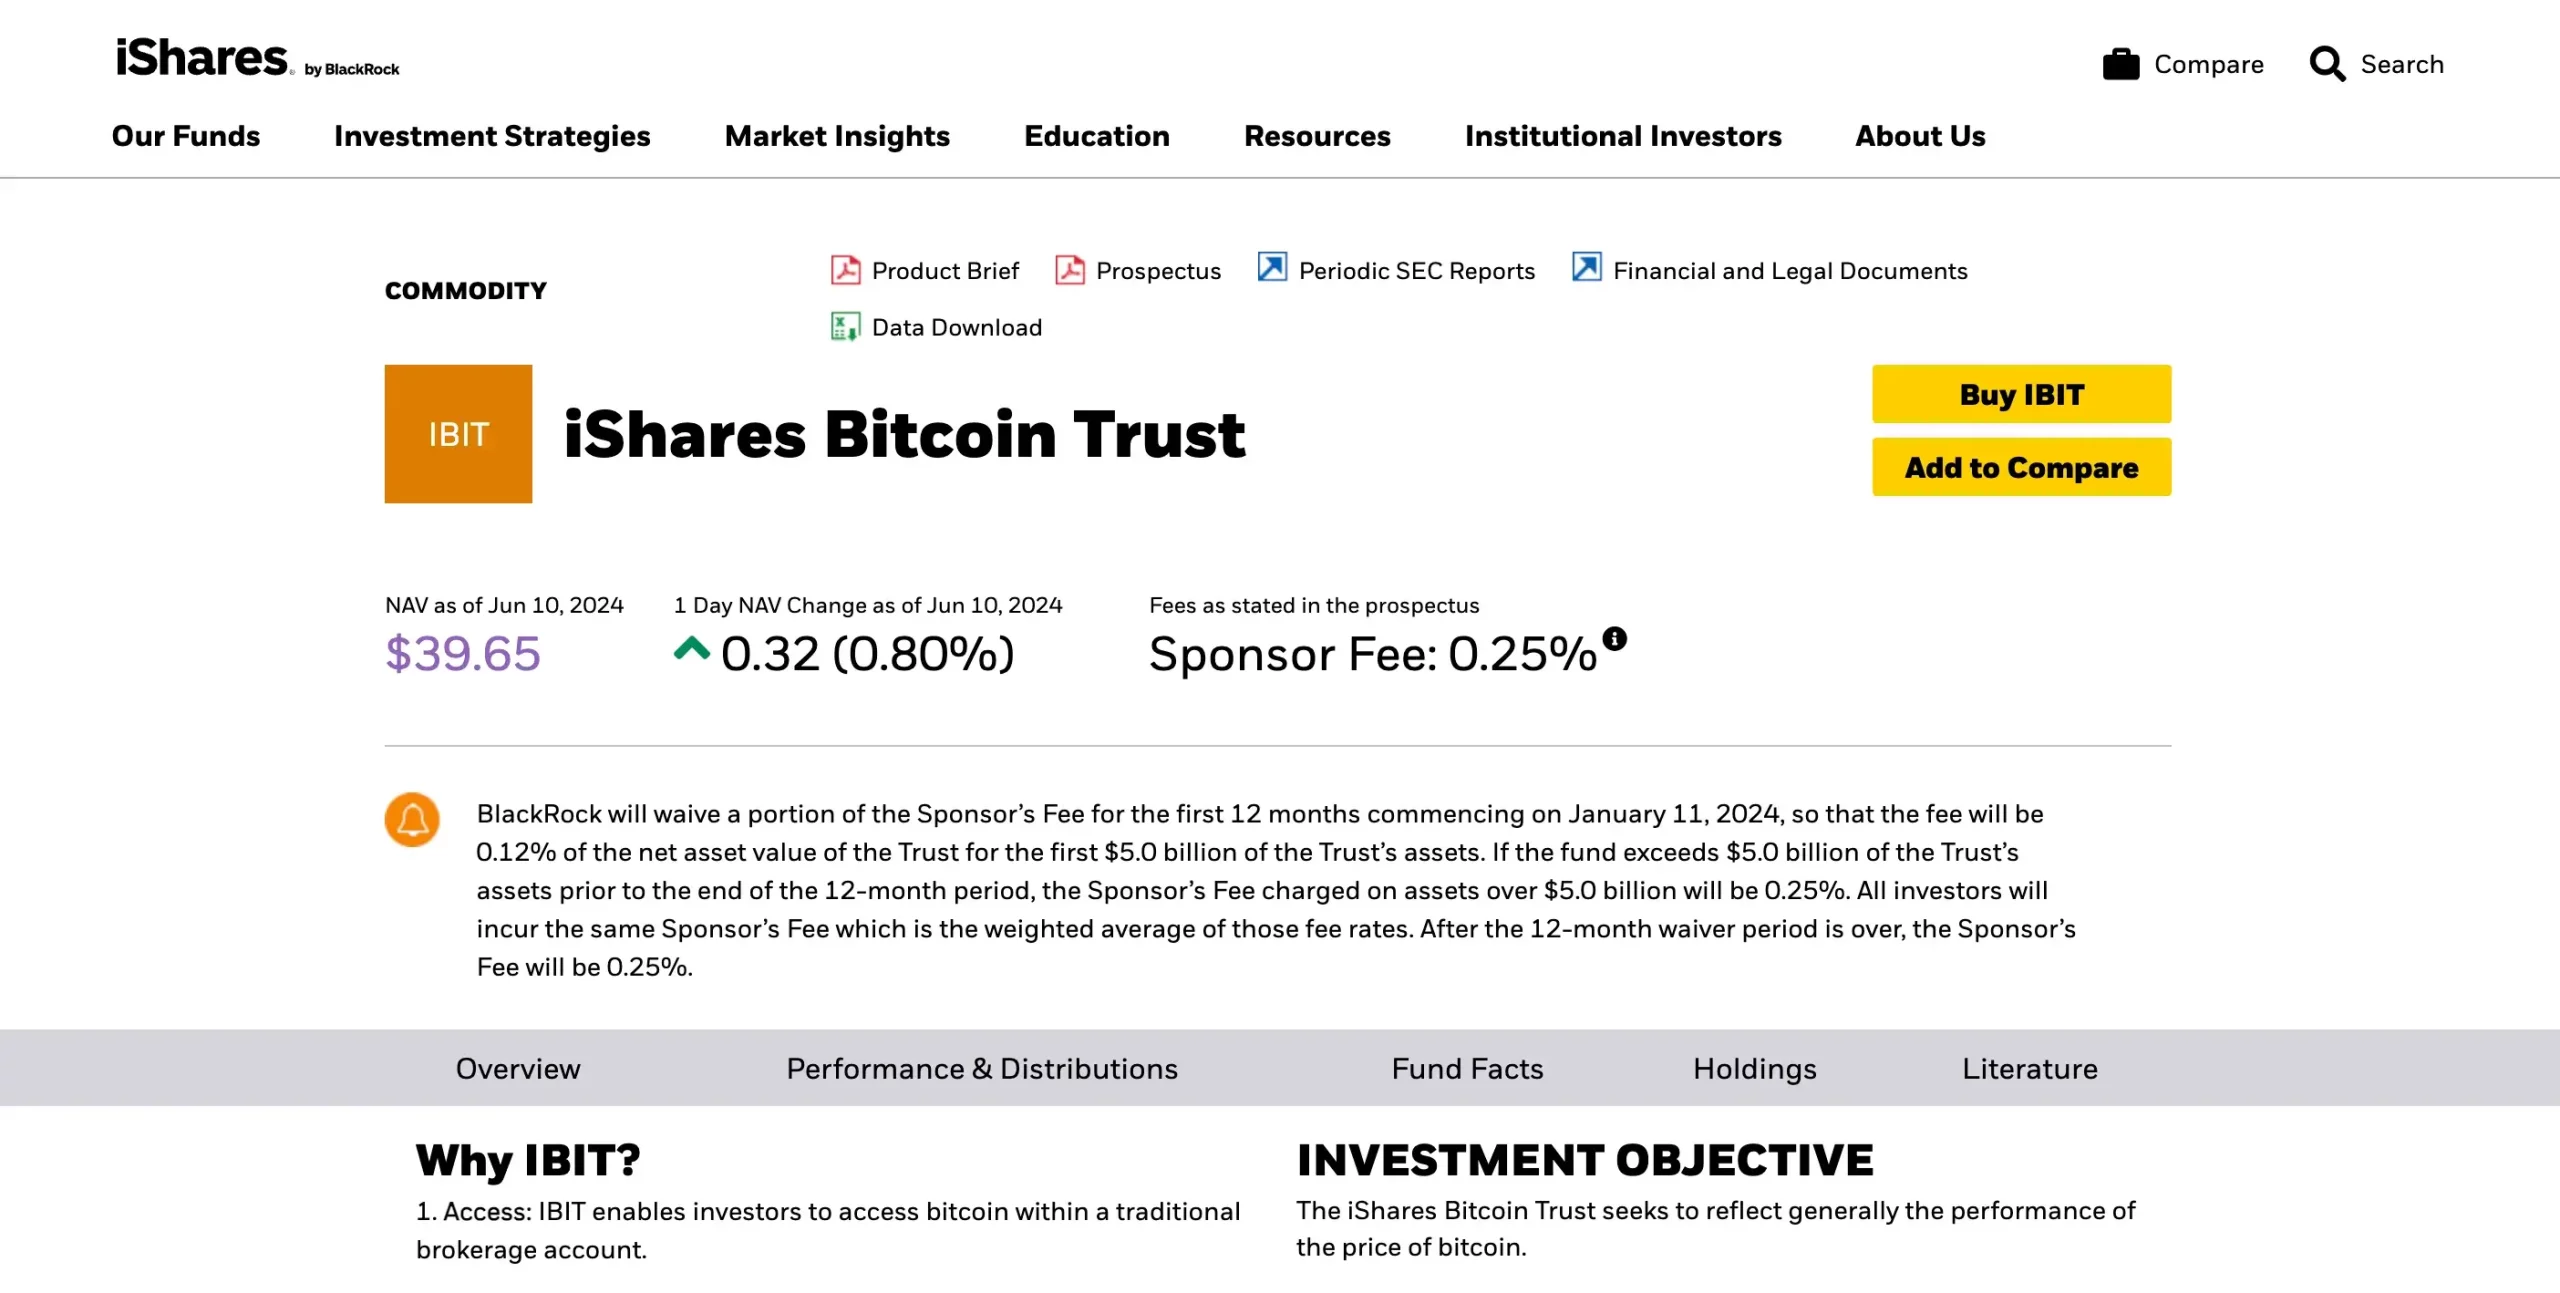 2. iShares Bitcoin Trust ETF (IBIT)